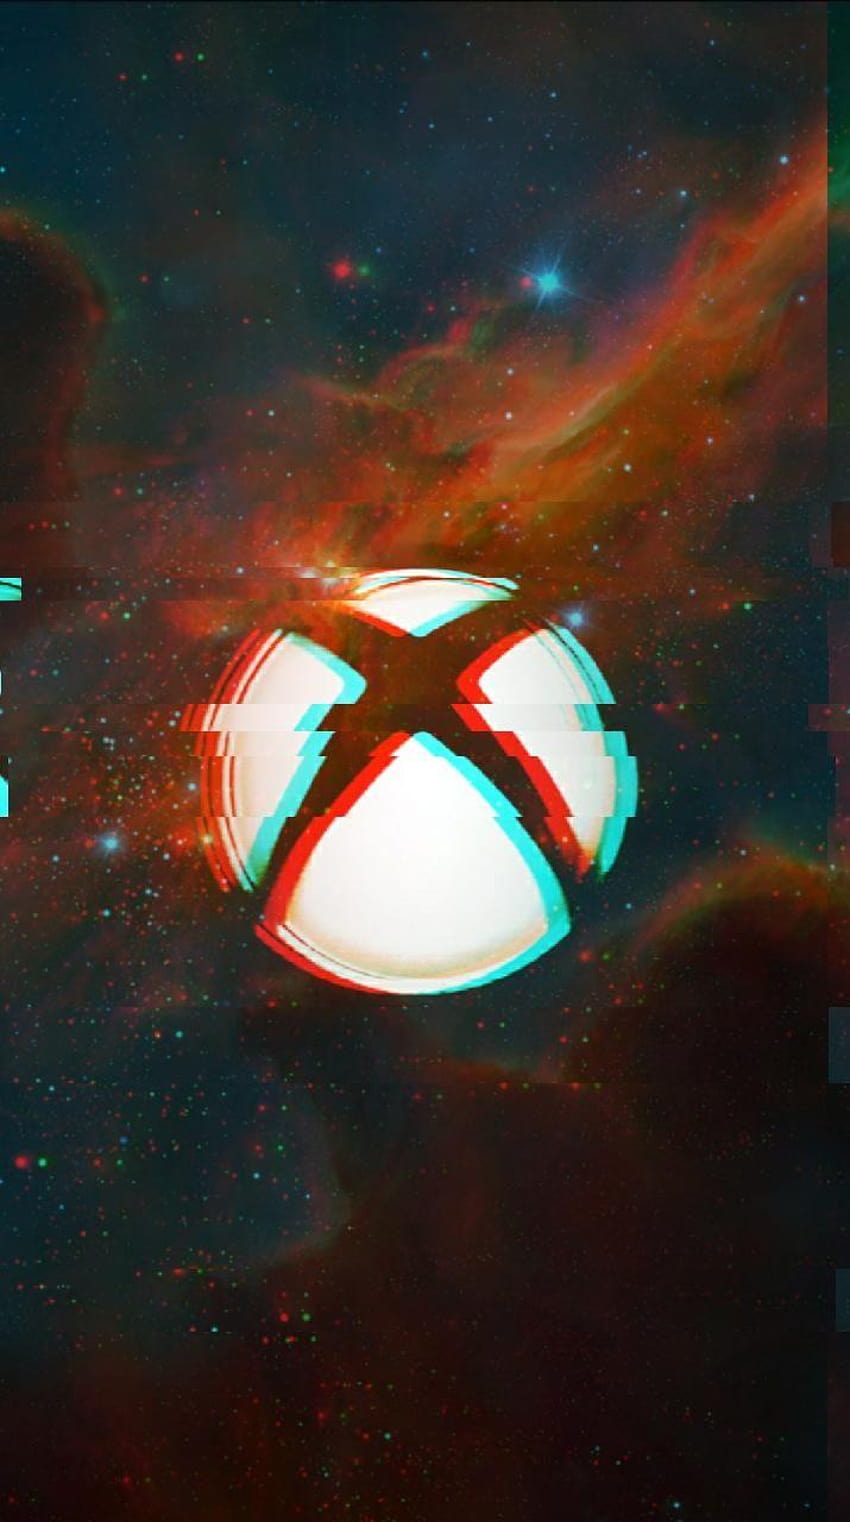 Có một logo luôn được xem là biểu tượng của chất lượng và đẳng cấp trong thế giới game. Đó chính là Logo Xbox! Chỉ cần nhìn thấy, bạn sẽ ngay lập tức nhận ra thương hiệu và niềm tự hào của nó. Hãy cùng chiêm ngưỡng logo ngay bây giờ.